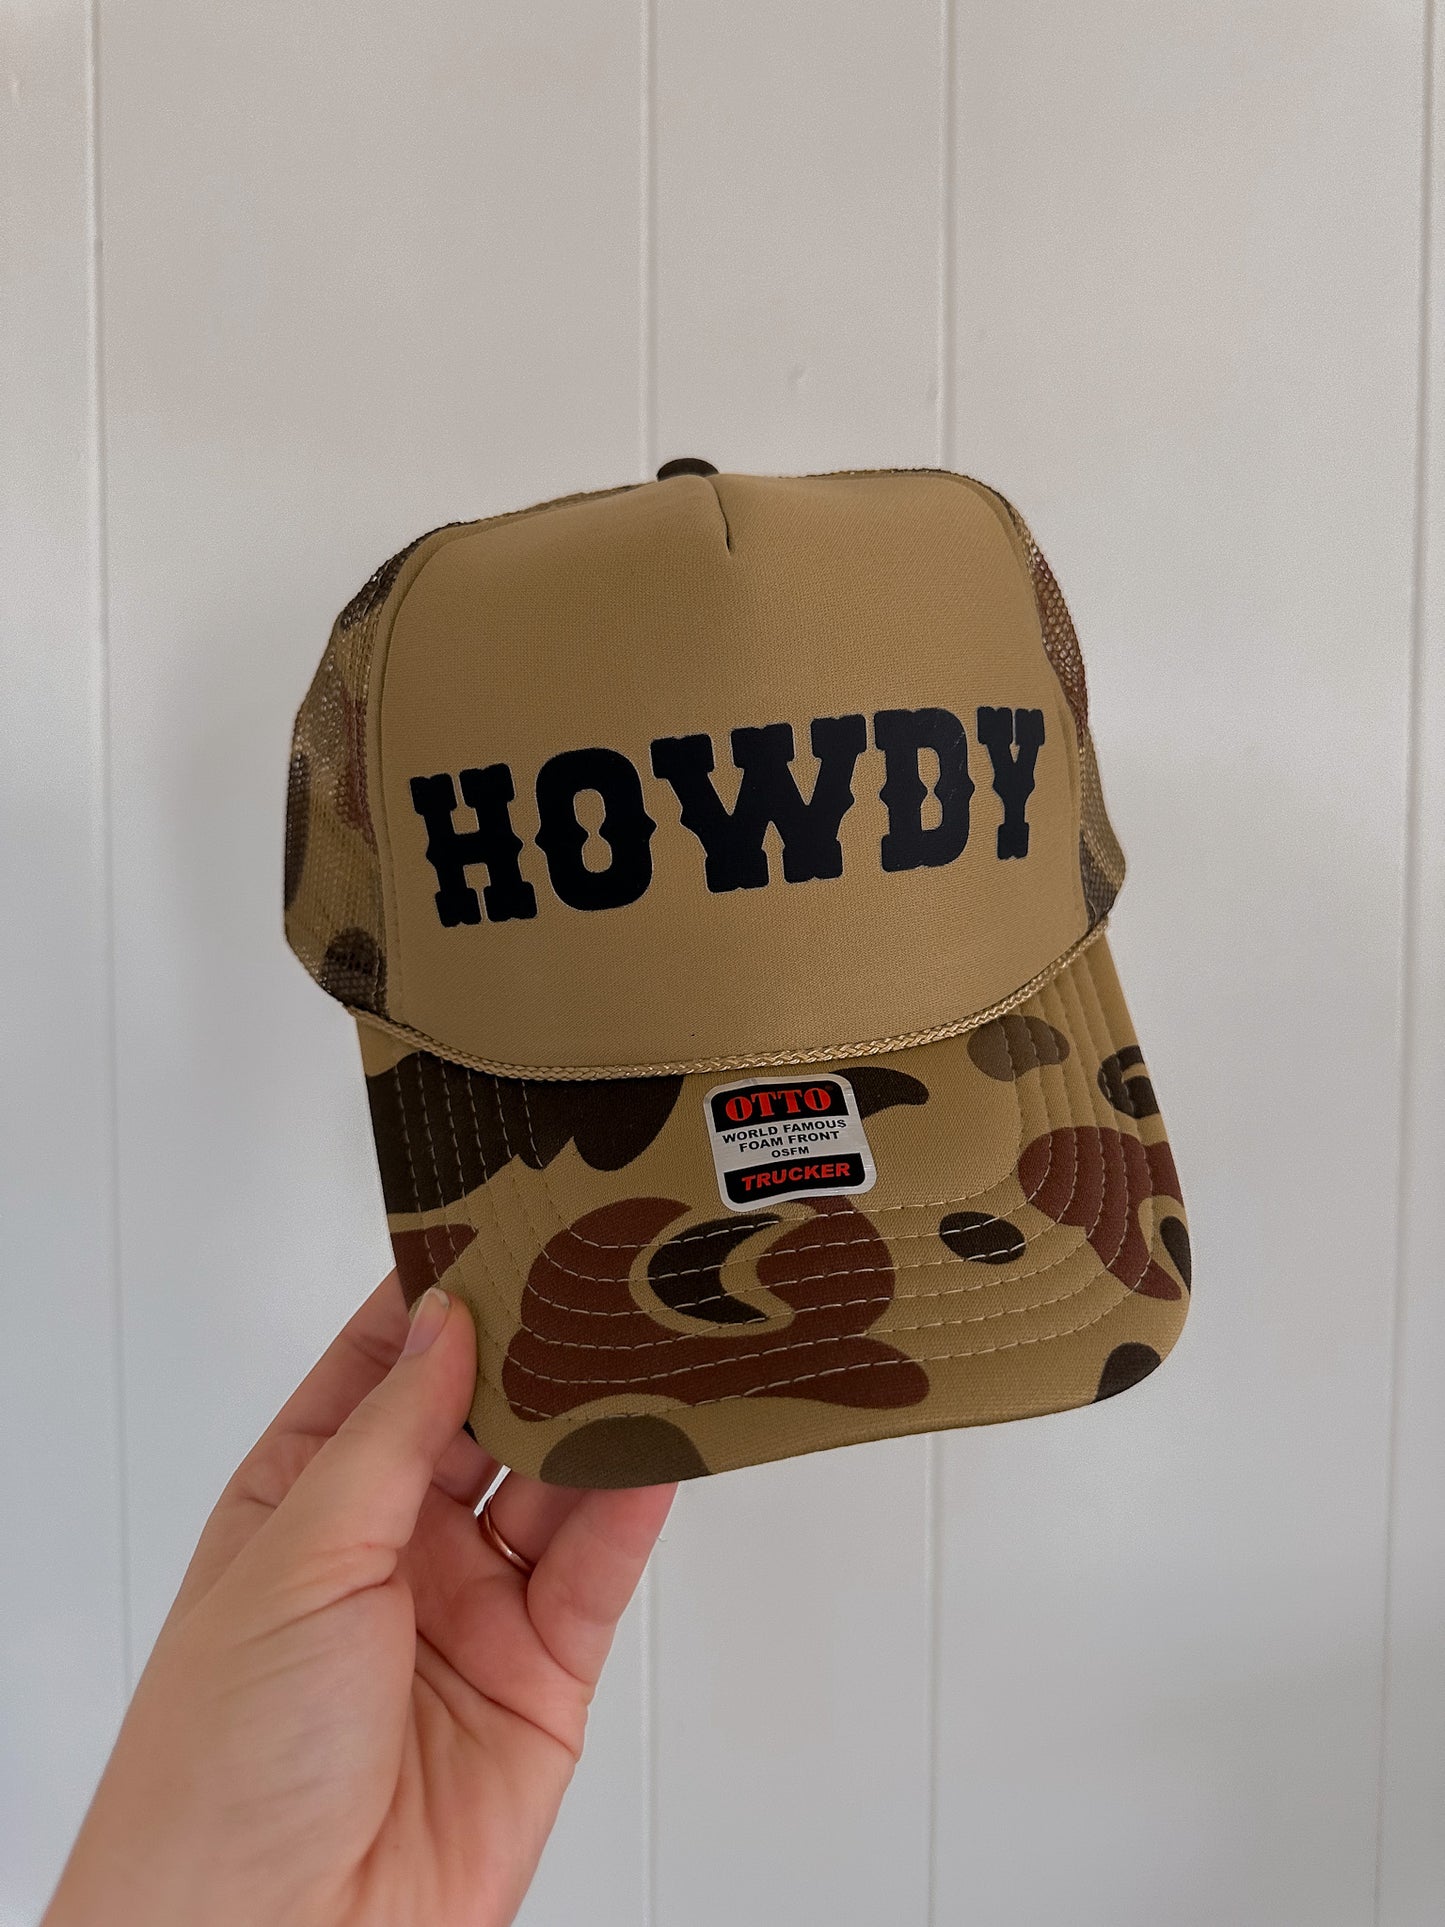 Howdy Trucker Hat - Camo